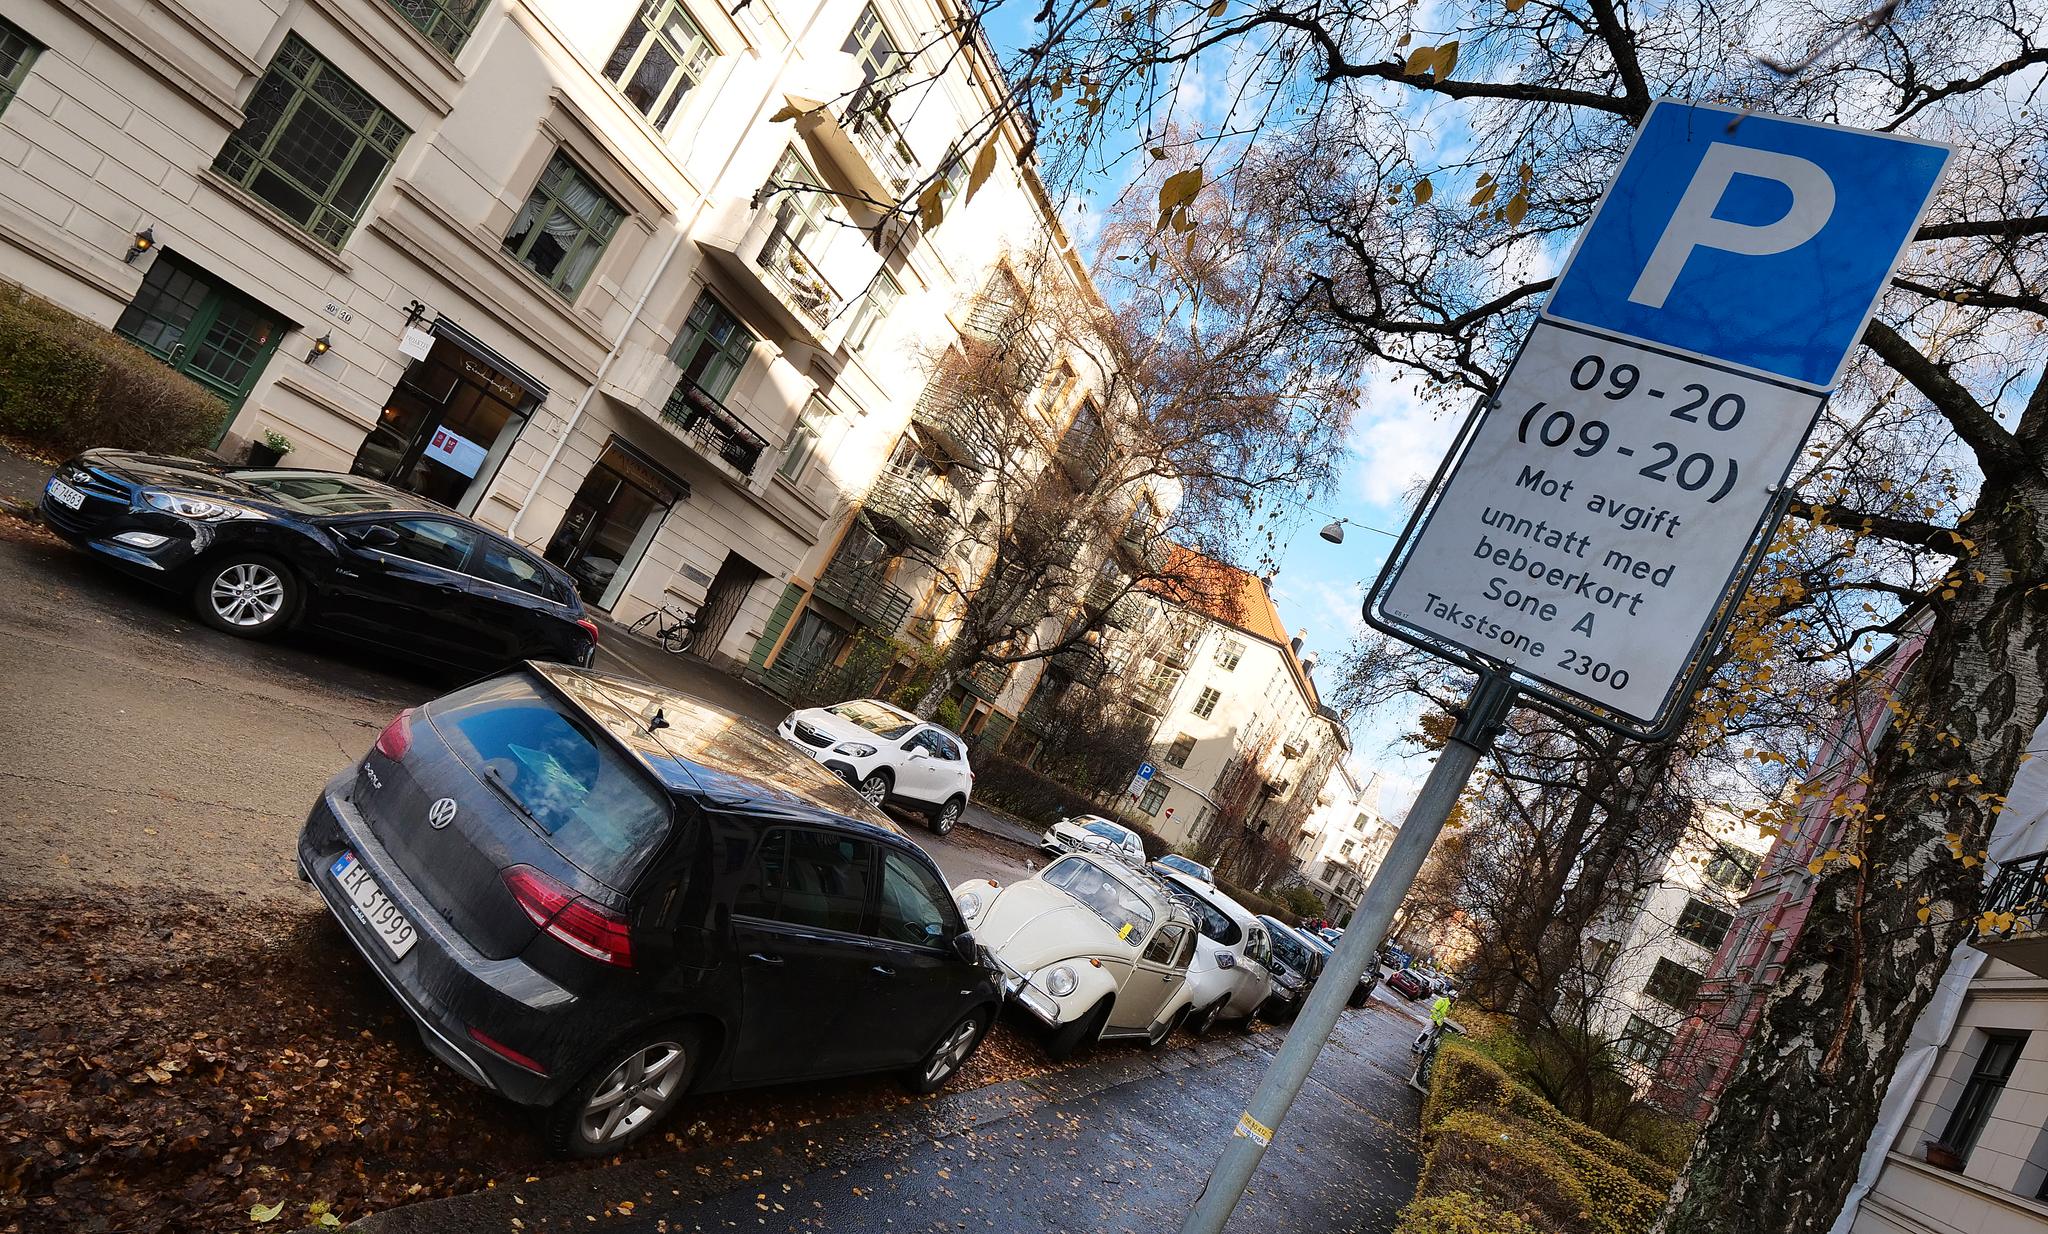 I 2009 kom beboerparkering som en prøveordning i Oslo. Nå blir den permanent. Fra mandag får så å si hele bydel Frogner beboerparkering. Dermed forsvinner 4700 gratis P-plasser.